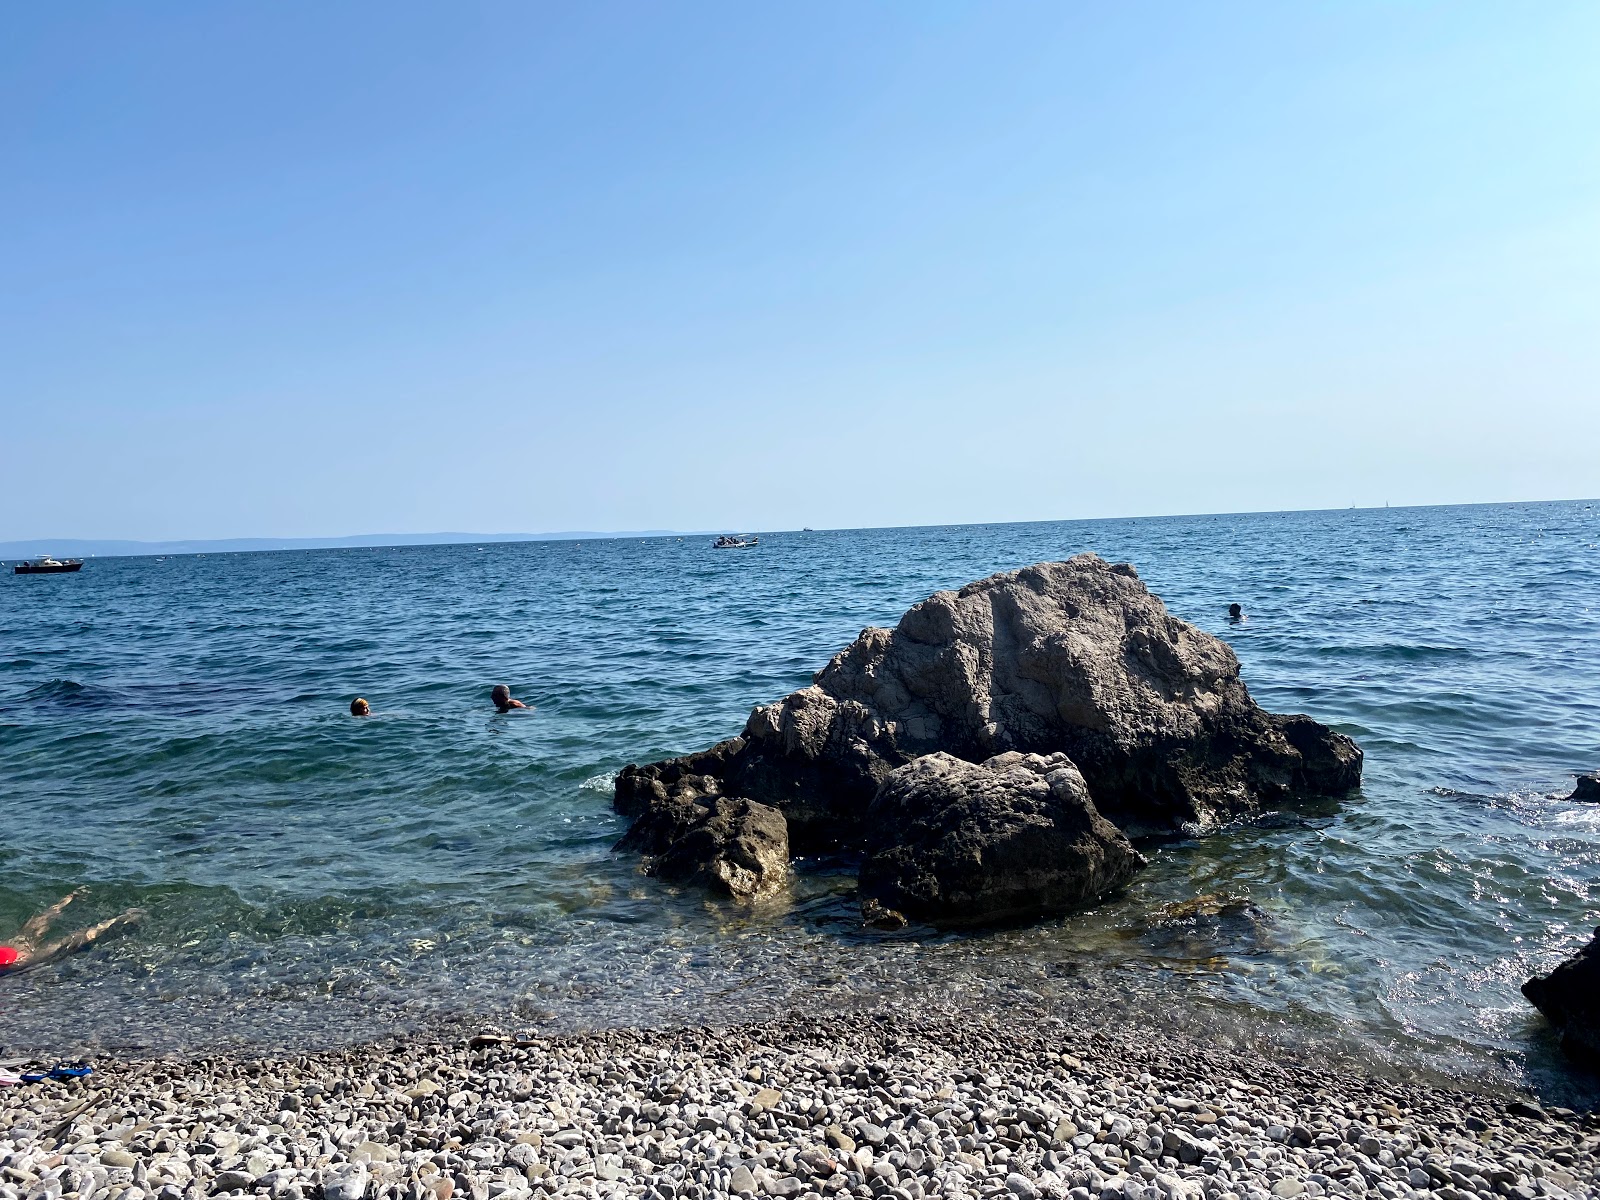 Fotografija Spiaggia Liburnia nahaja se v naravnem okolju